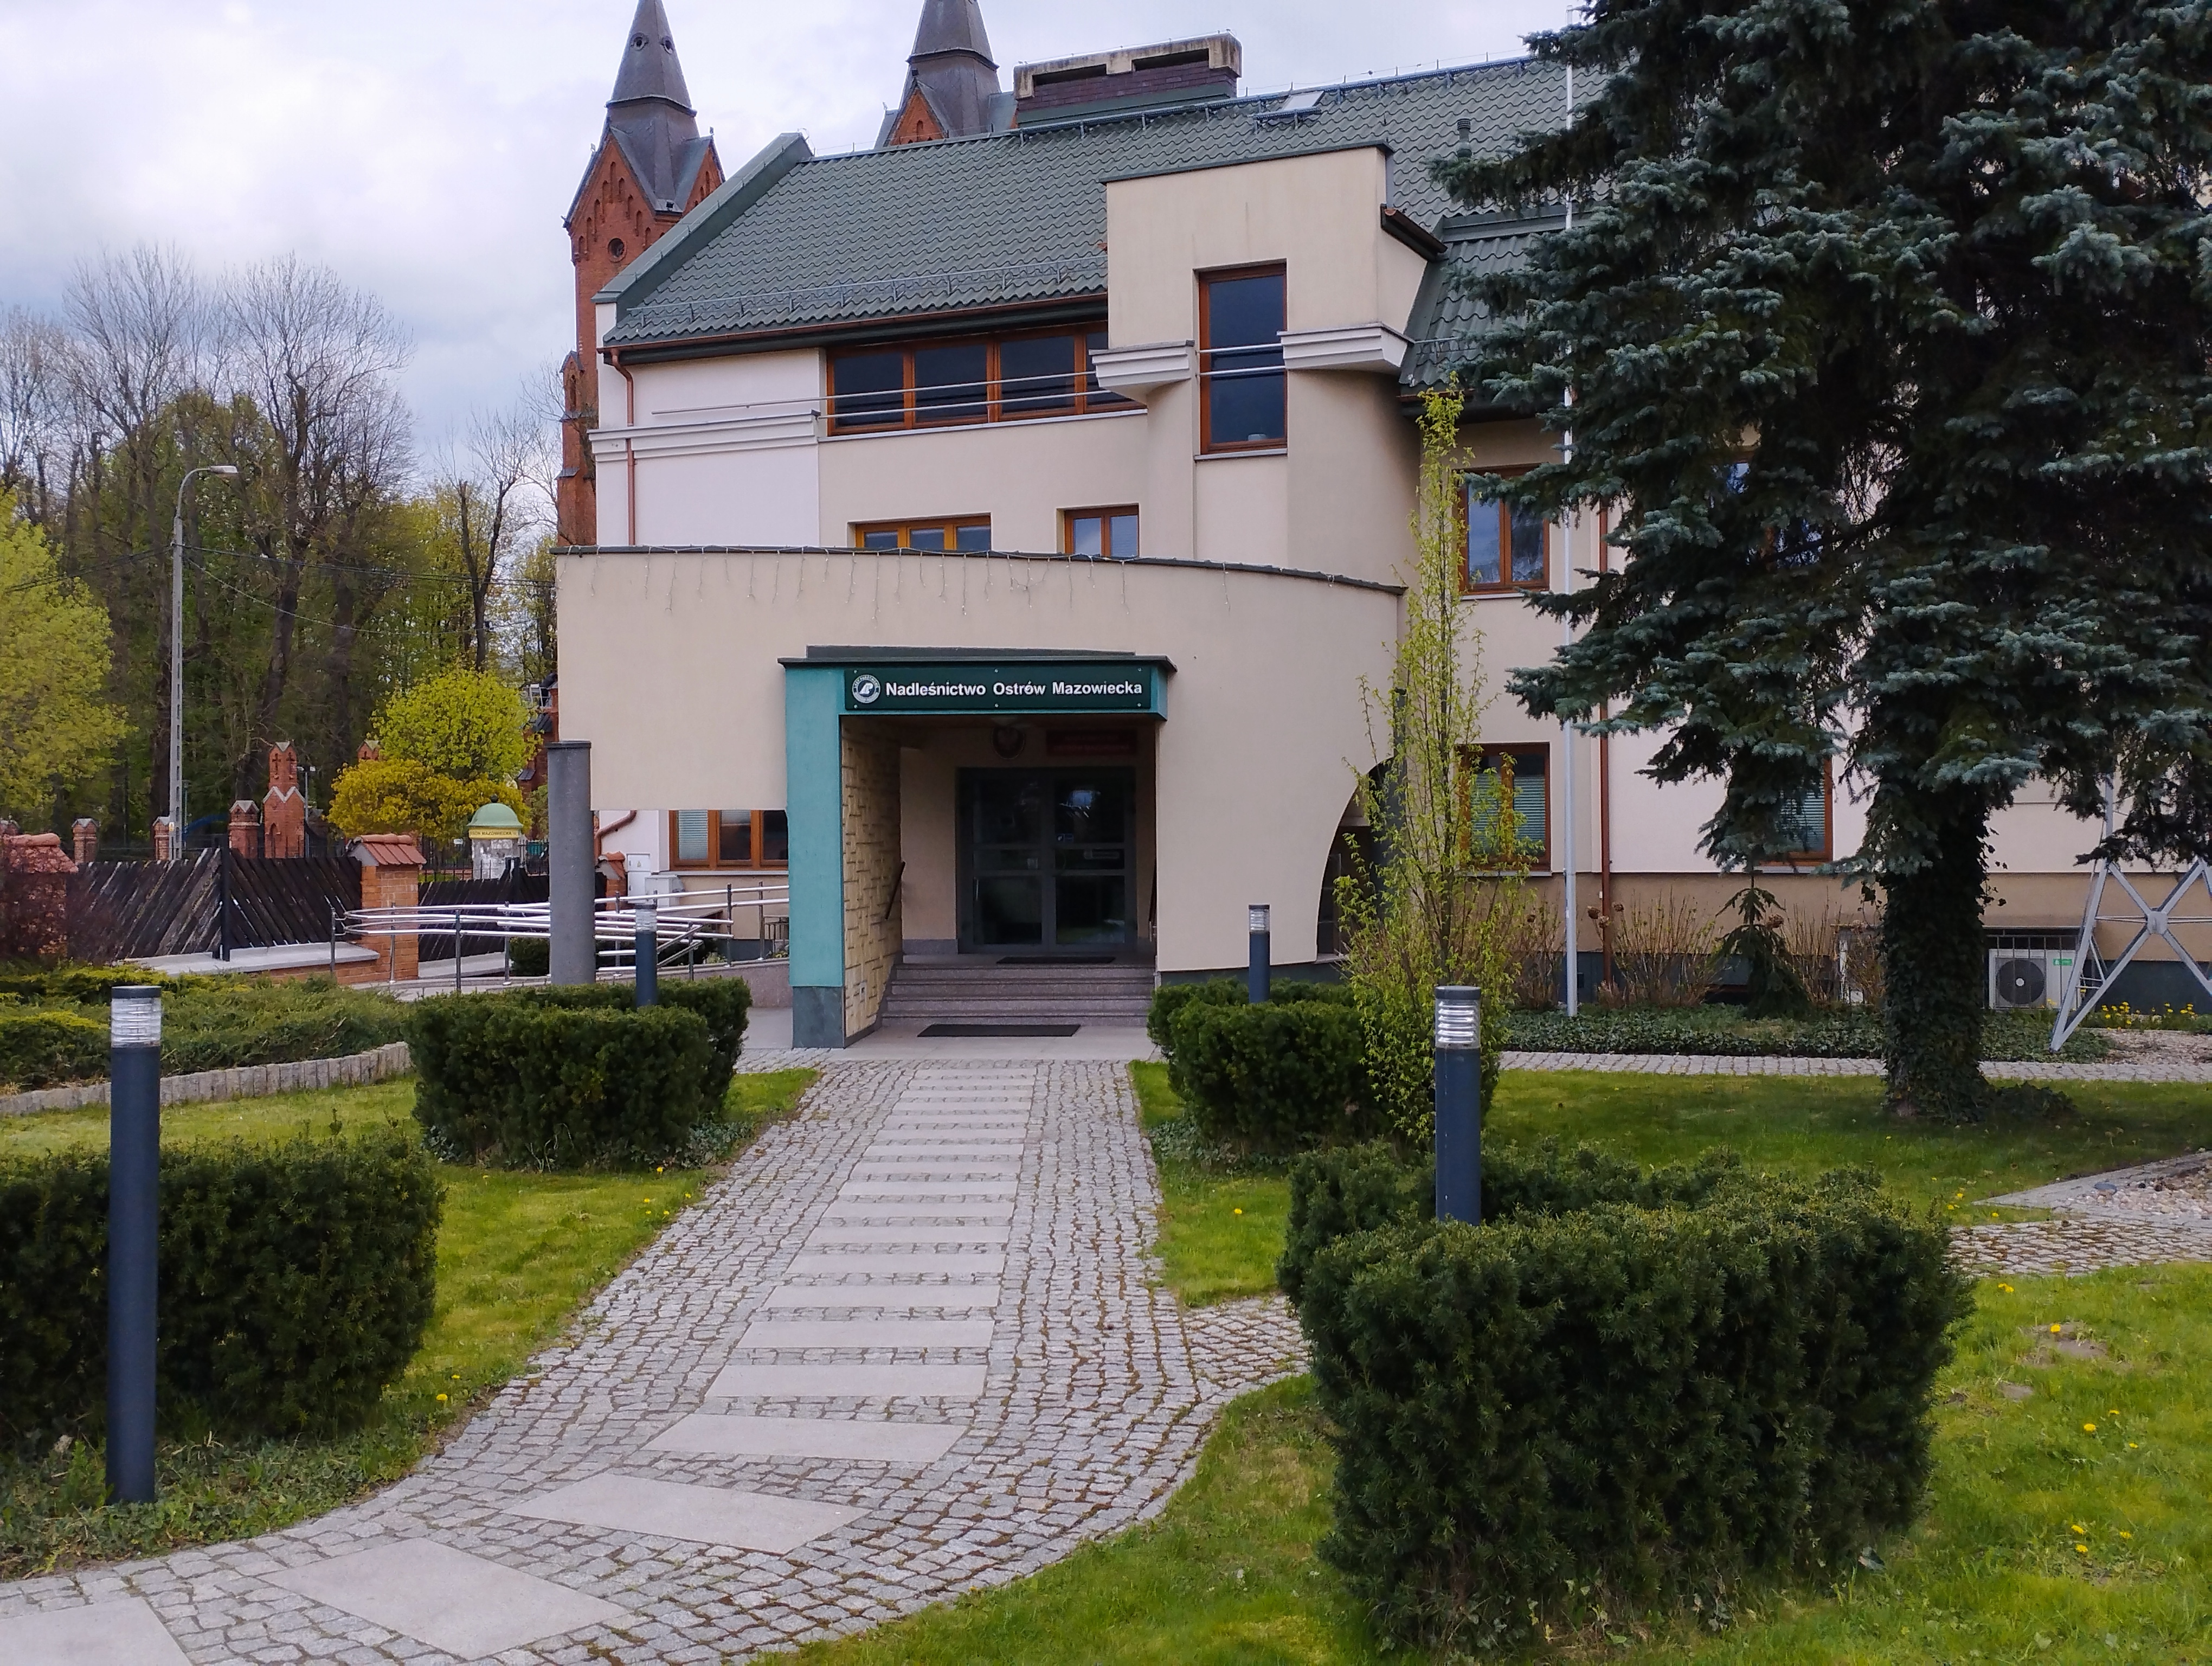 Headquarters Nadleśnictwo Ostrów Mazowiecka